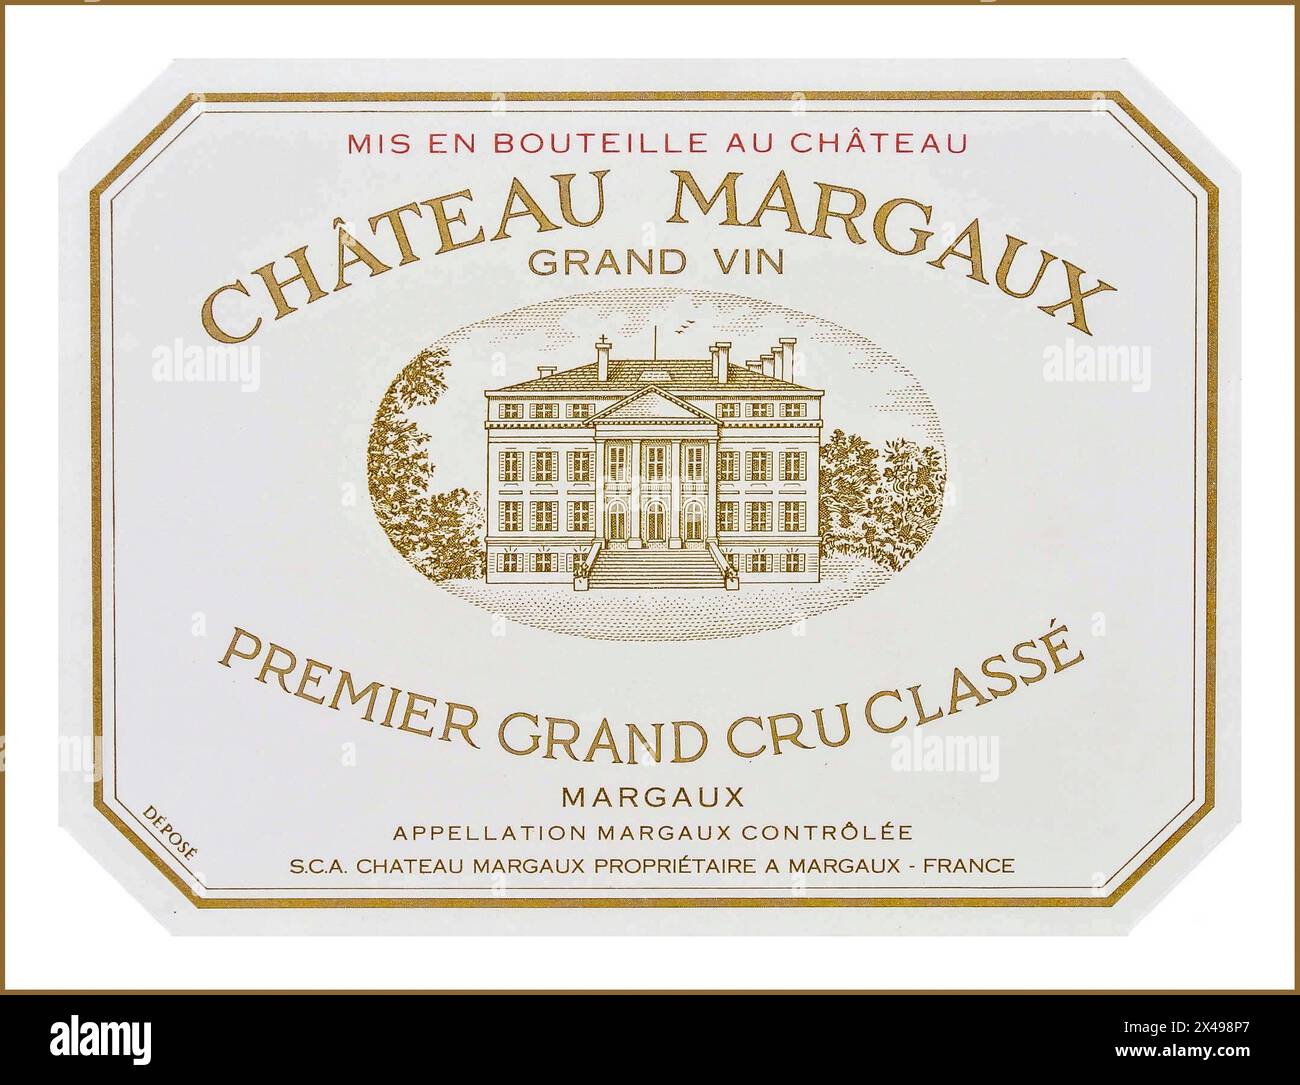 Etichetta della bottiglia di vino MARGAUX Chateau Margaux Premier Grand cru classe Red Merlot denominazione Margaux controlee Gironde Bordeaux Francia Luxury fine Left Bank Bordeaux Wine Foto Stock